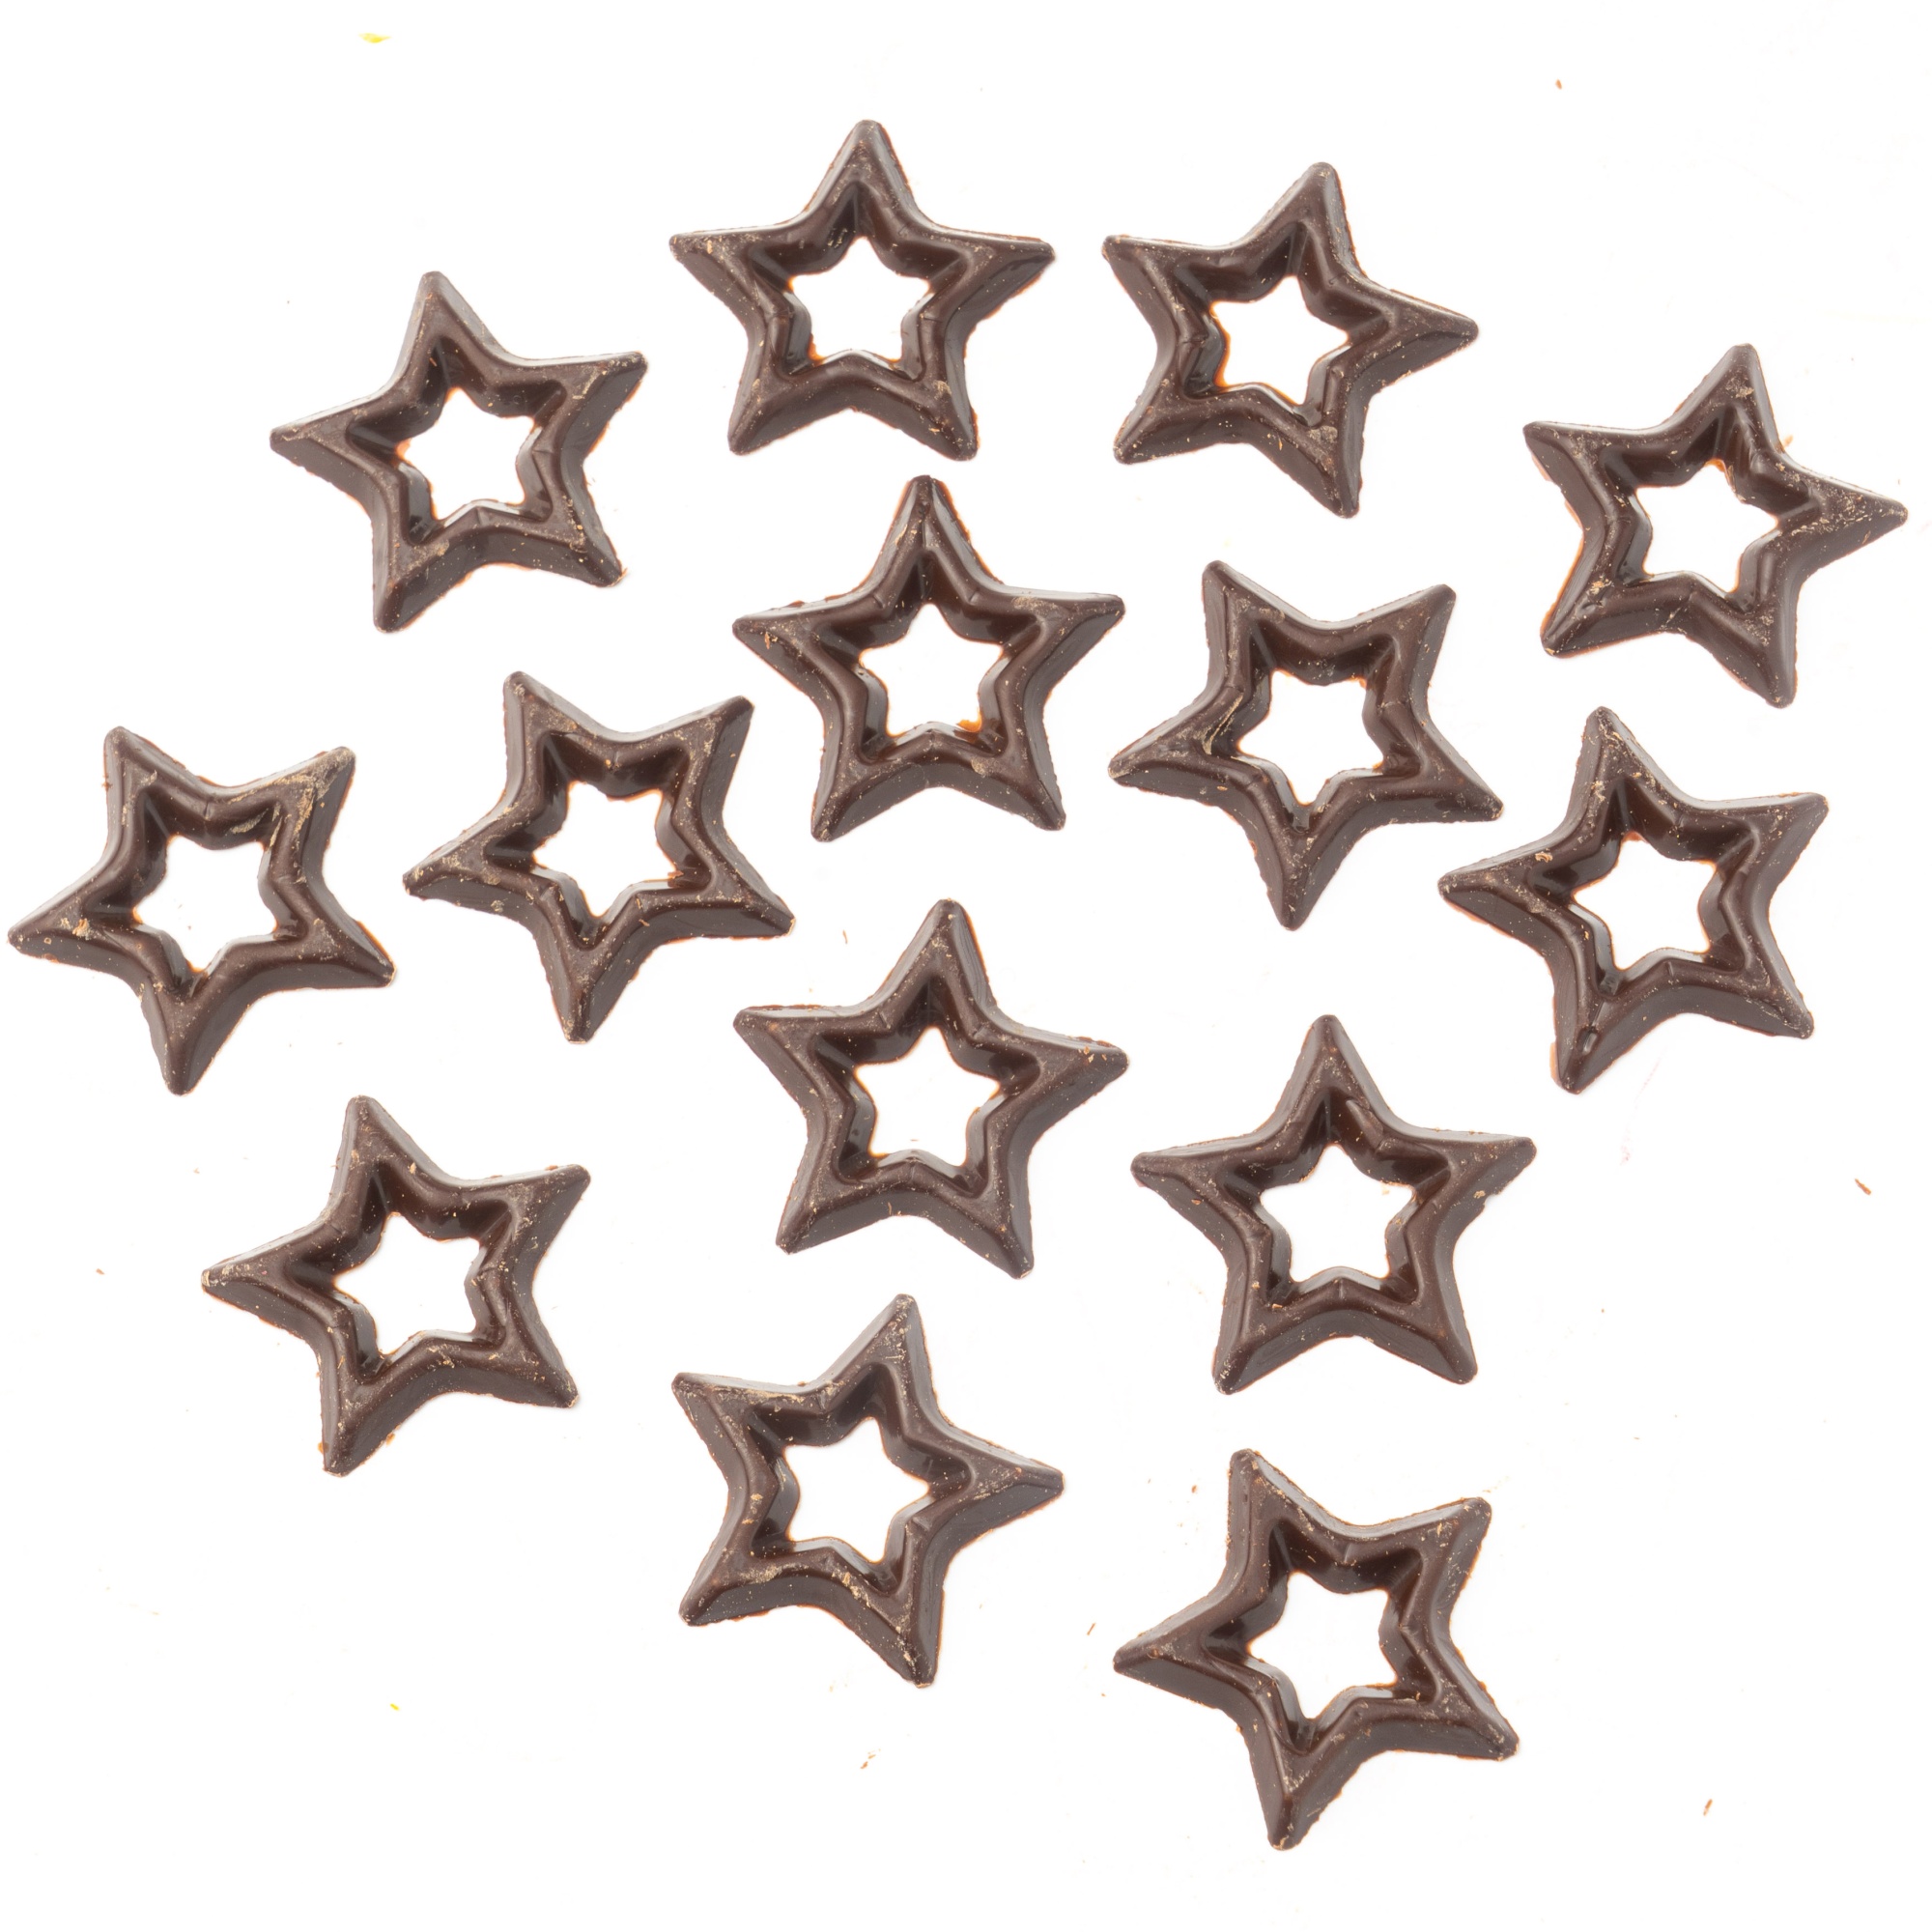 Шоколадная звезда. Шоколадная красная звезда. Украшение шоколад. "Звезда темная" (304 шт/уп) арт.d77134, Бельгия. Форма семиконечная звезда для шоколада. Шоколадка звезда